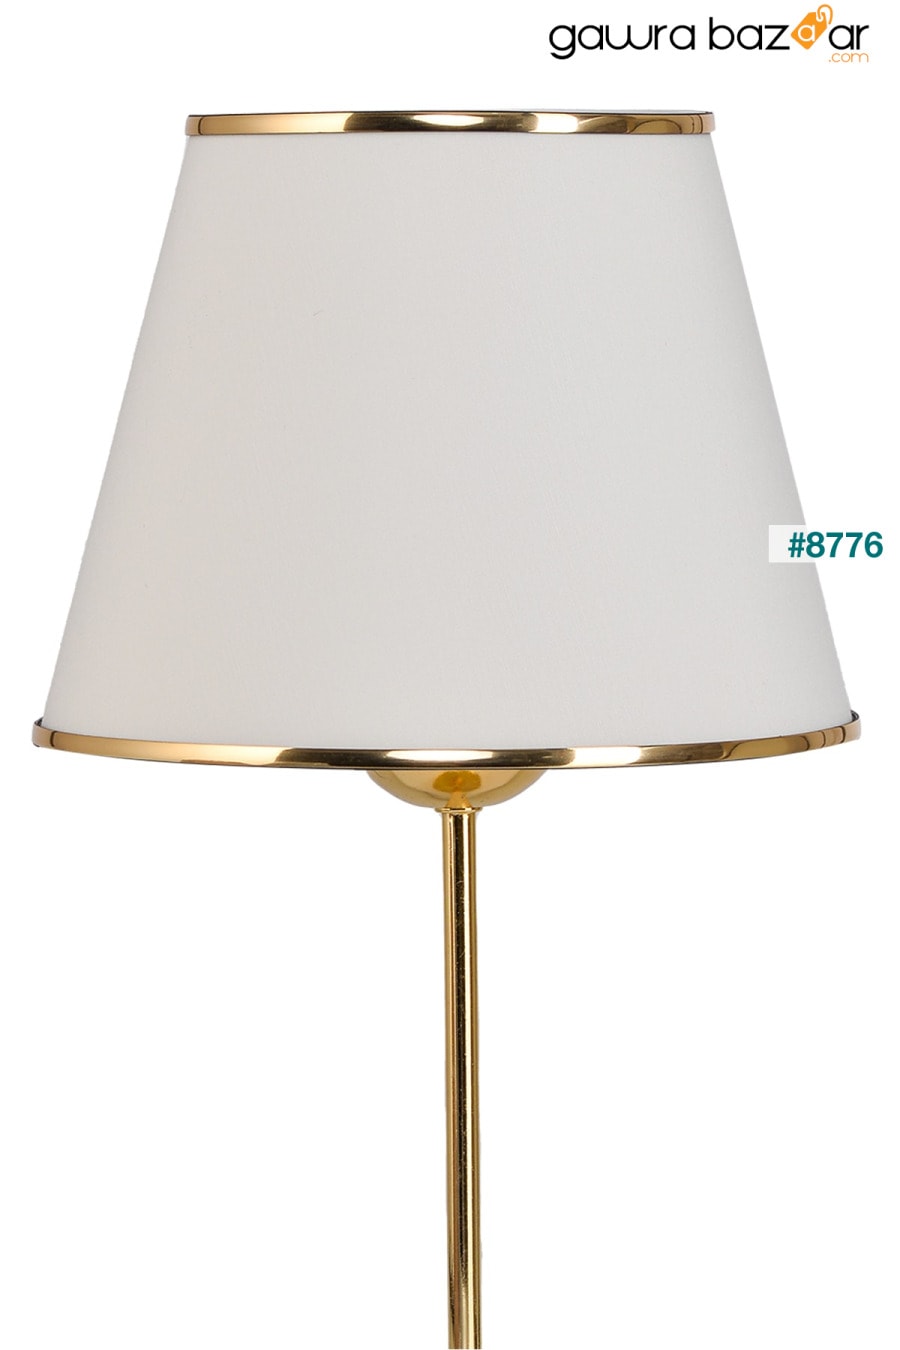 مصباح طاولة عاكس الضوء باللون الذهبي من ميرزا مكون من قطعتين - كريمي EvLight 3